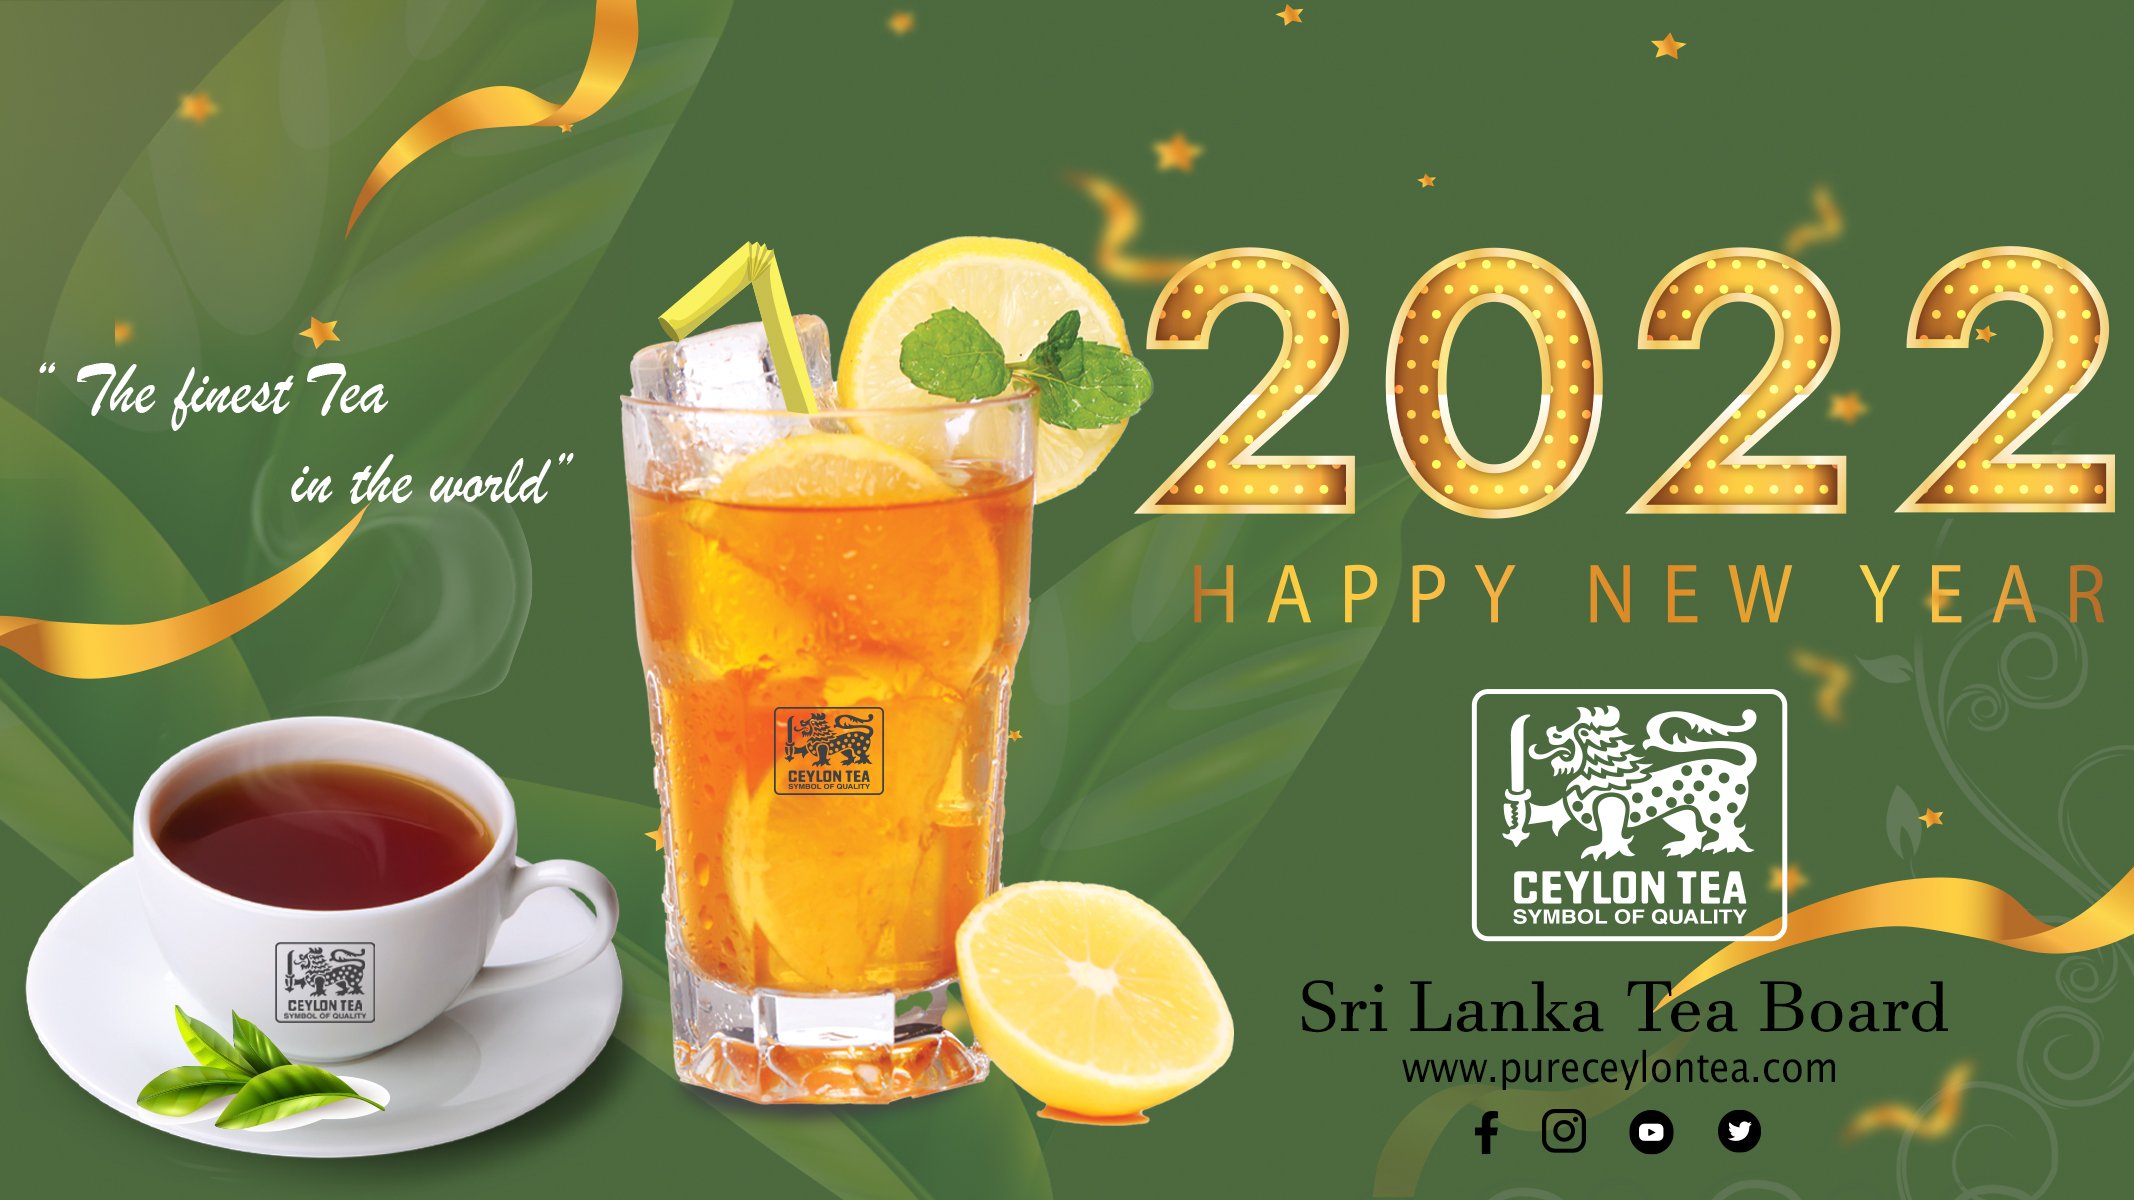 Ceylon Tea: The “finest tea” in the world